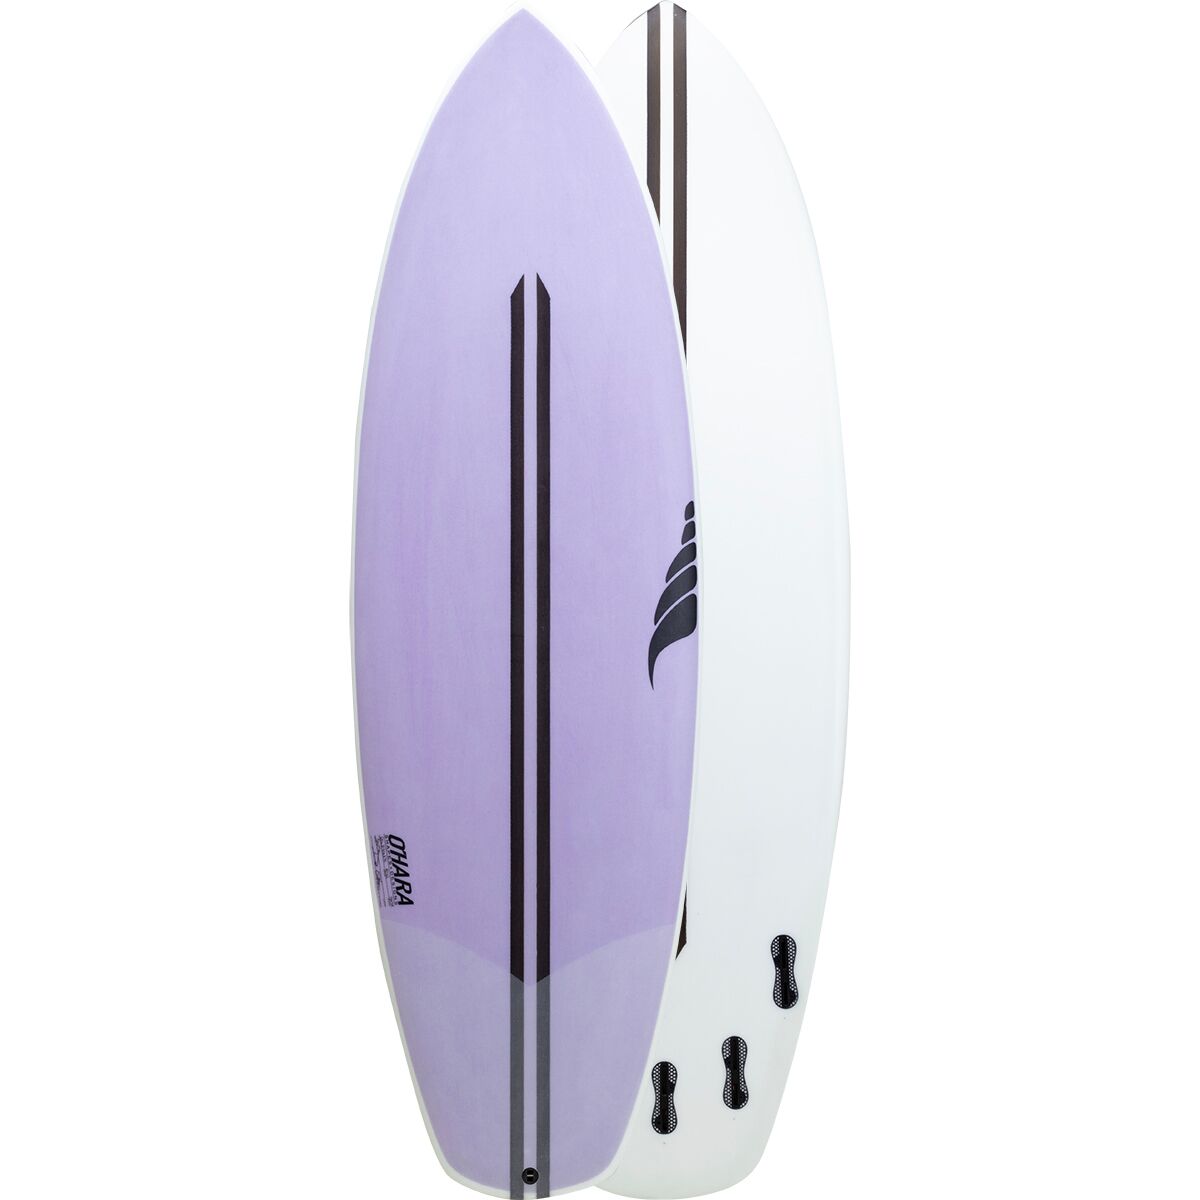 Solid Surfboards Shuttle Surfboard